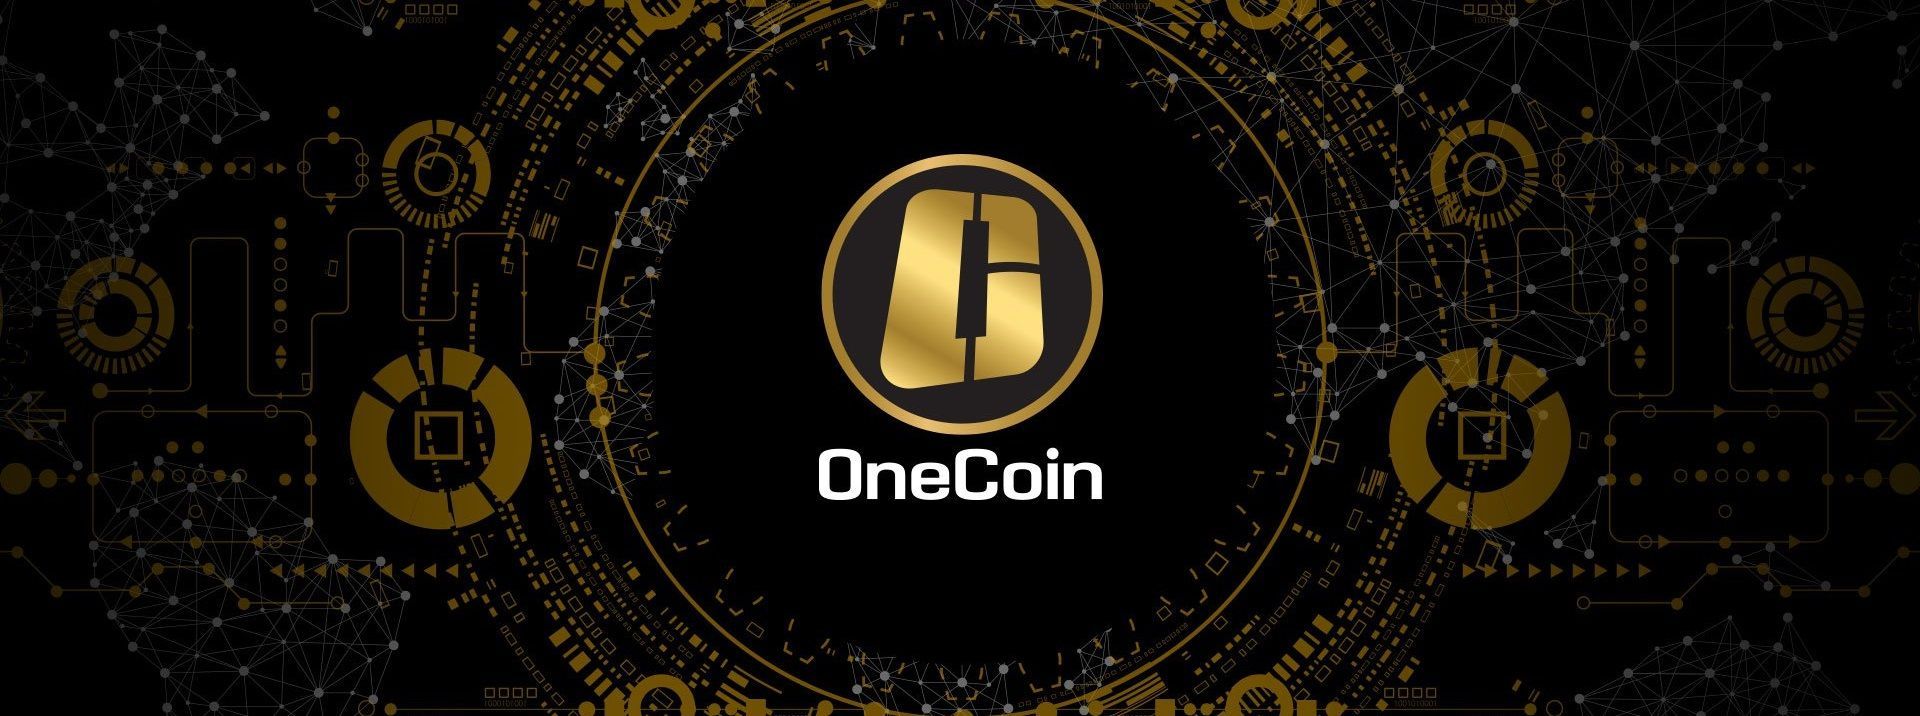 Tiếp tục là OneCoin - Cảnh sát Ấn Độ cáo buộc tội danh chống lại 22 nhà tổ chức OneCoin